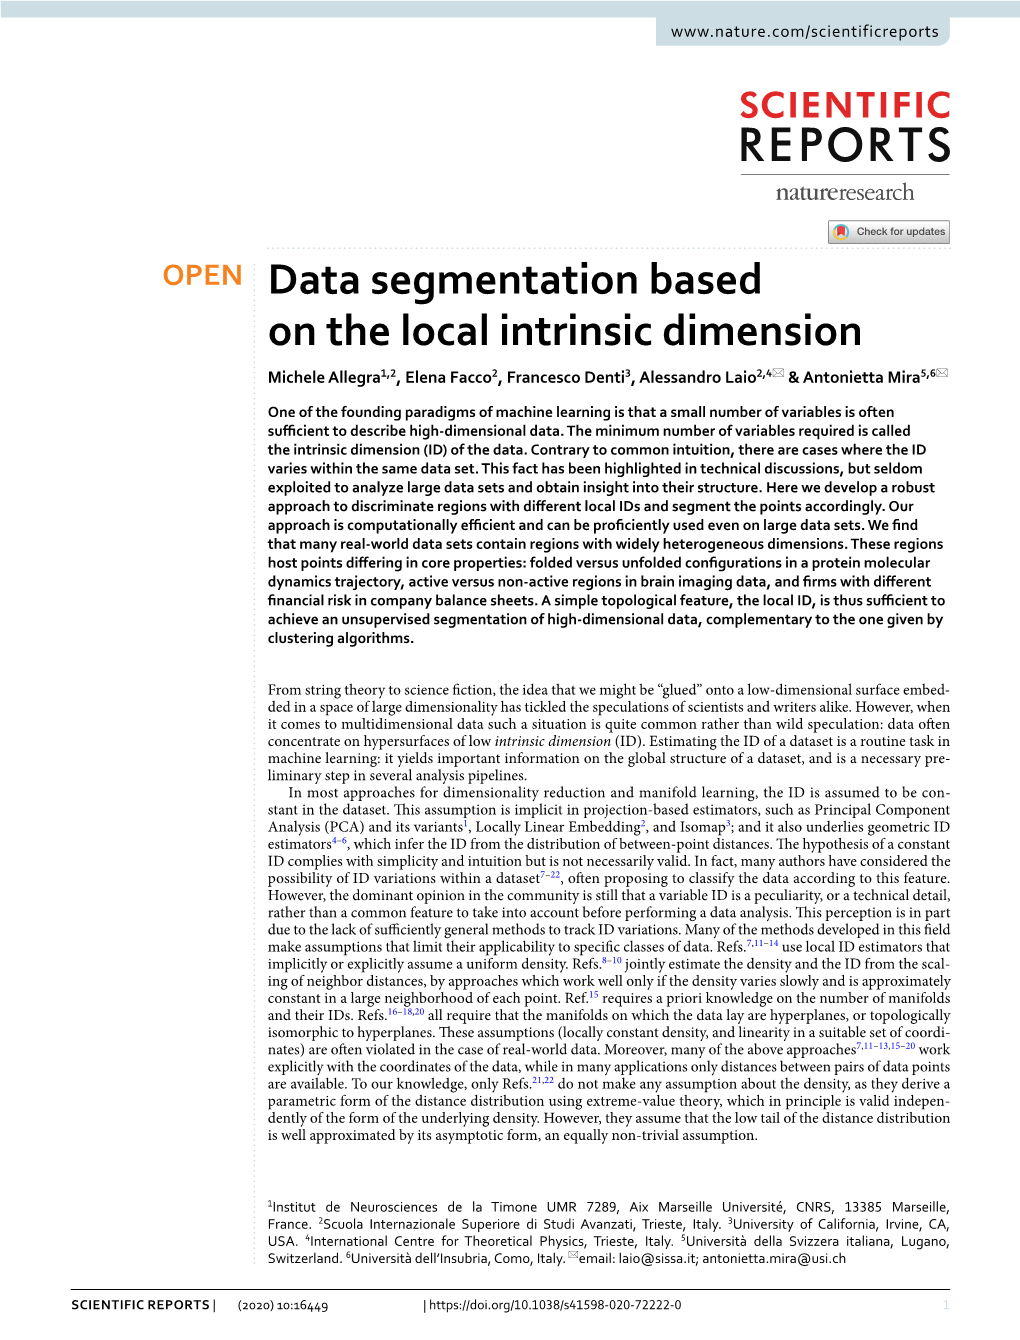 Data Segmentation Based on the Local Intrinsic Dimension Michele Allegra1,2, Elena Facco2, Francesco Denti3, Alessandro Laio2,4* & Antonietta Mira5,6*